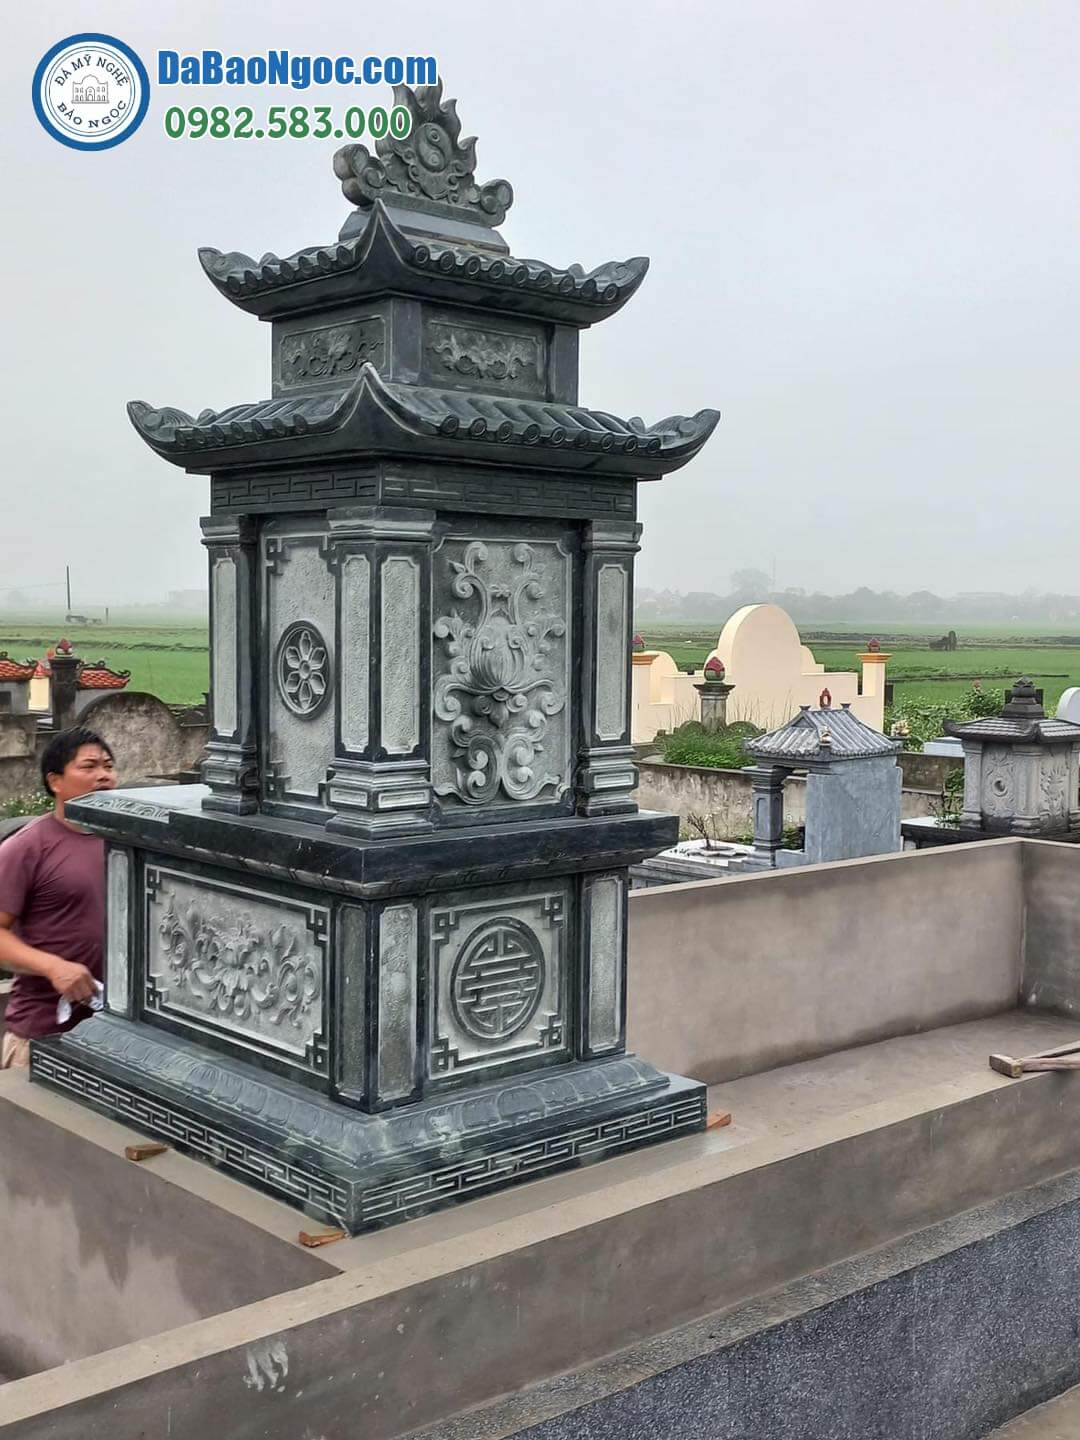 Công trình mộ đá 2 mái làm bằng đá xanh rêu do Đá mỹ nghệ Bảo Ngọc cung cấp tại Đông Triều - Quảng Ninh